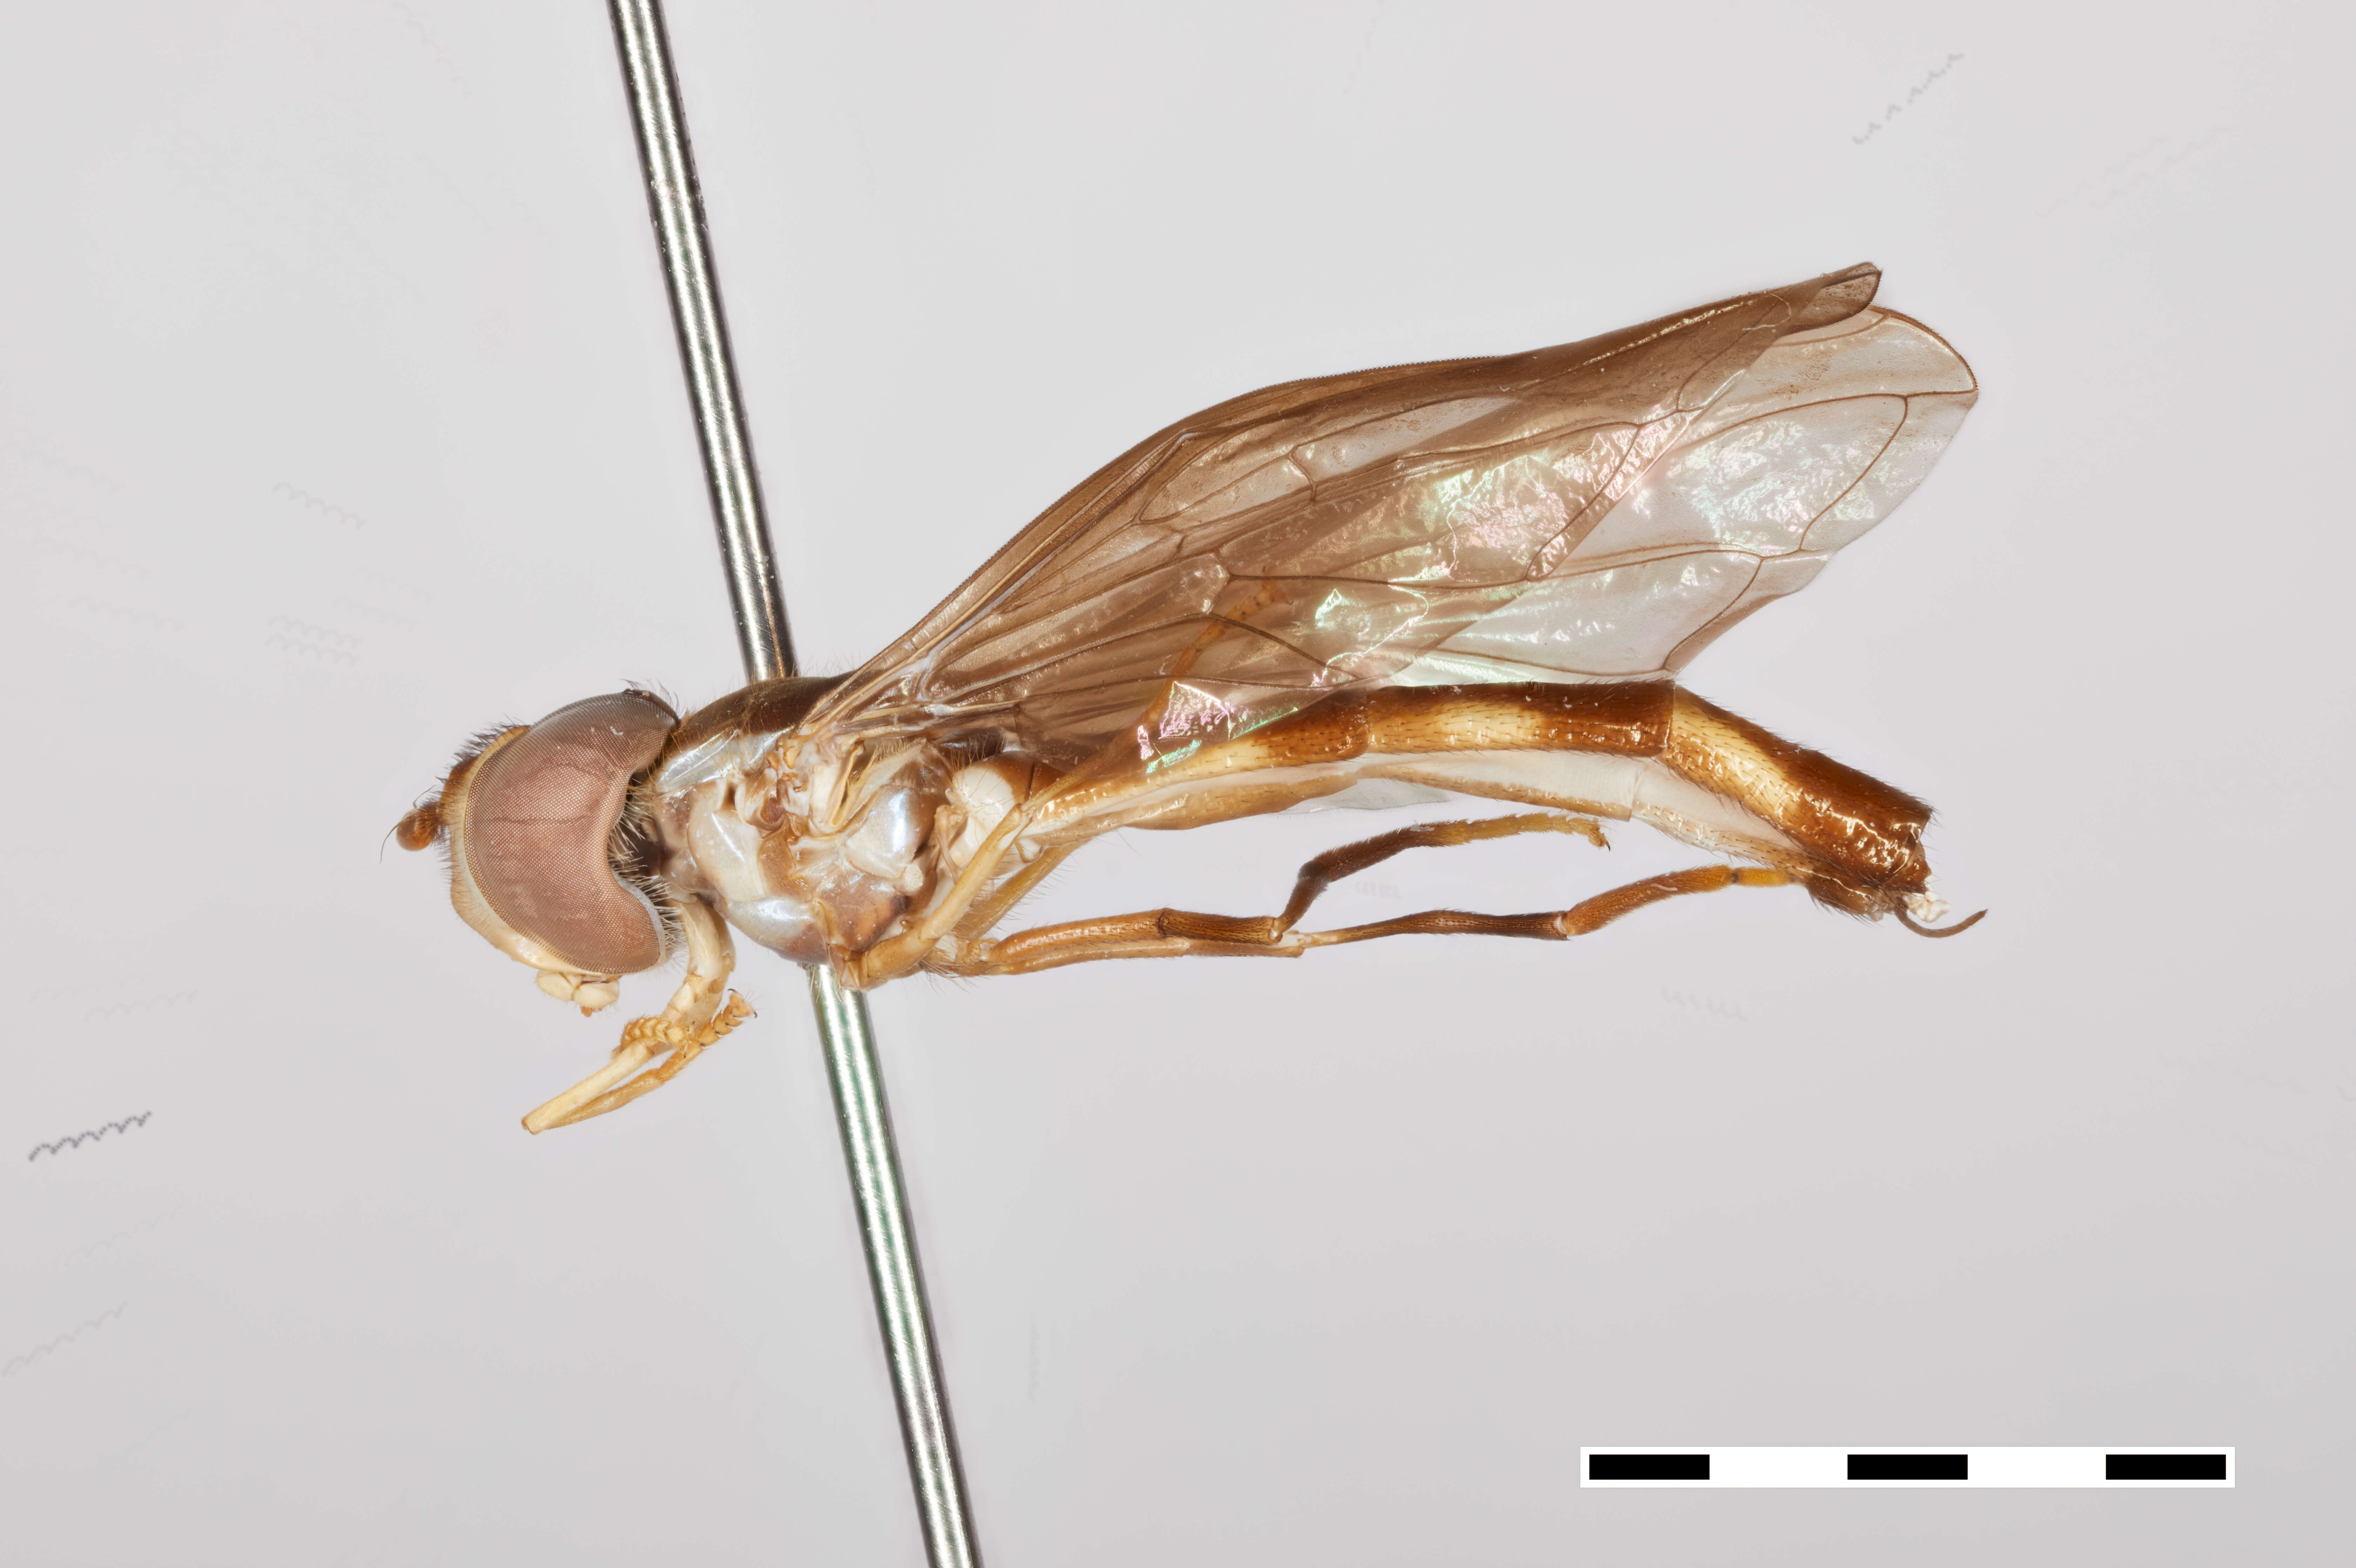 Sivun Ocyptamus myiophagus Thompson 2018 kuva